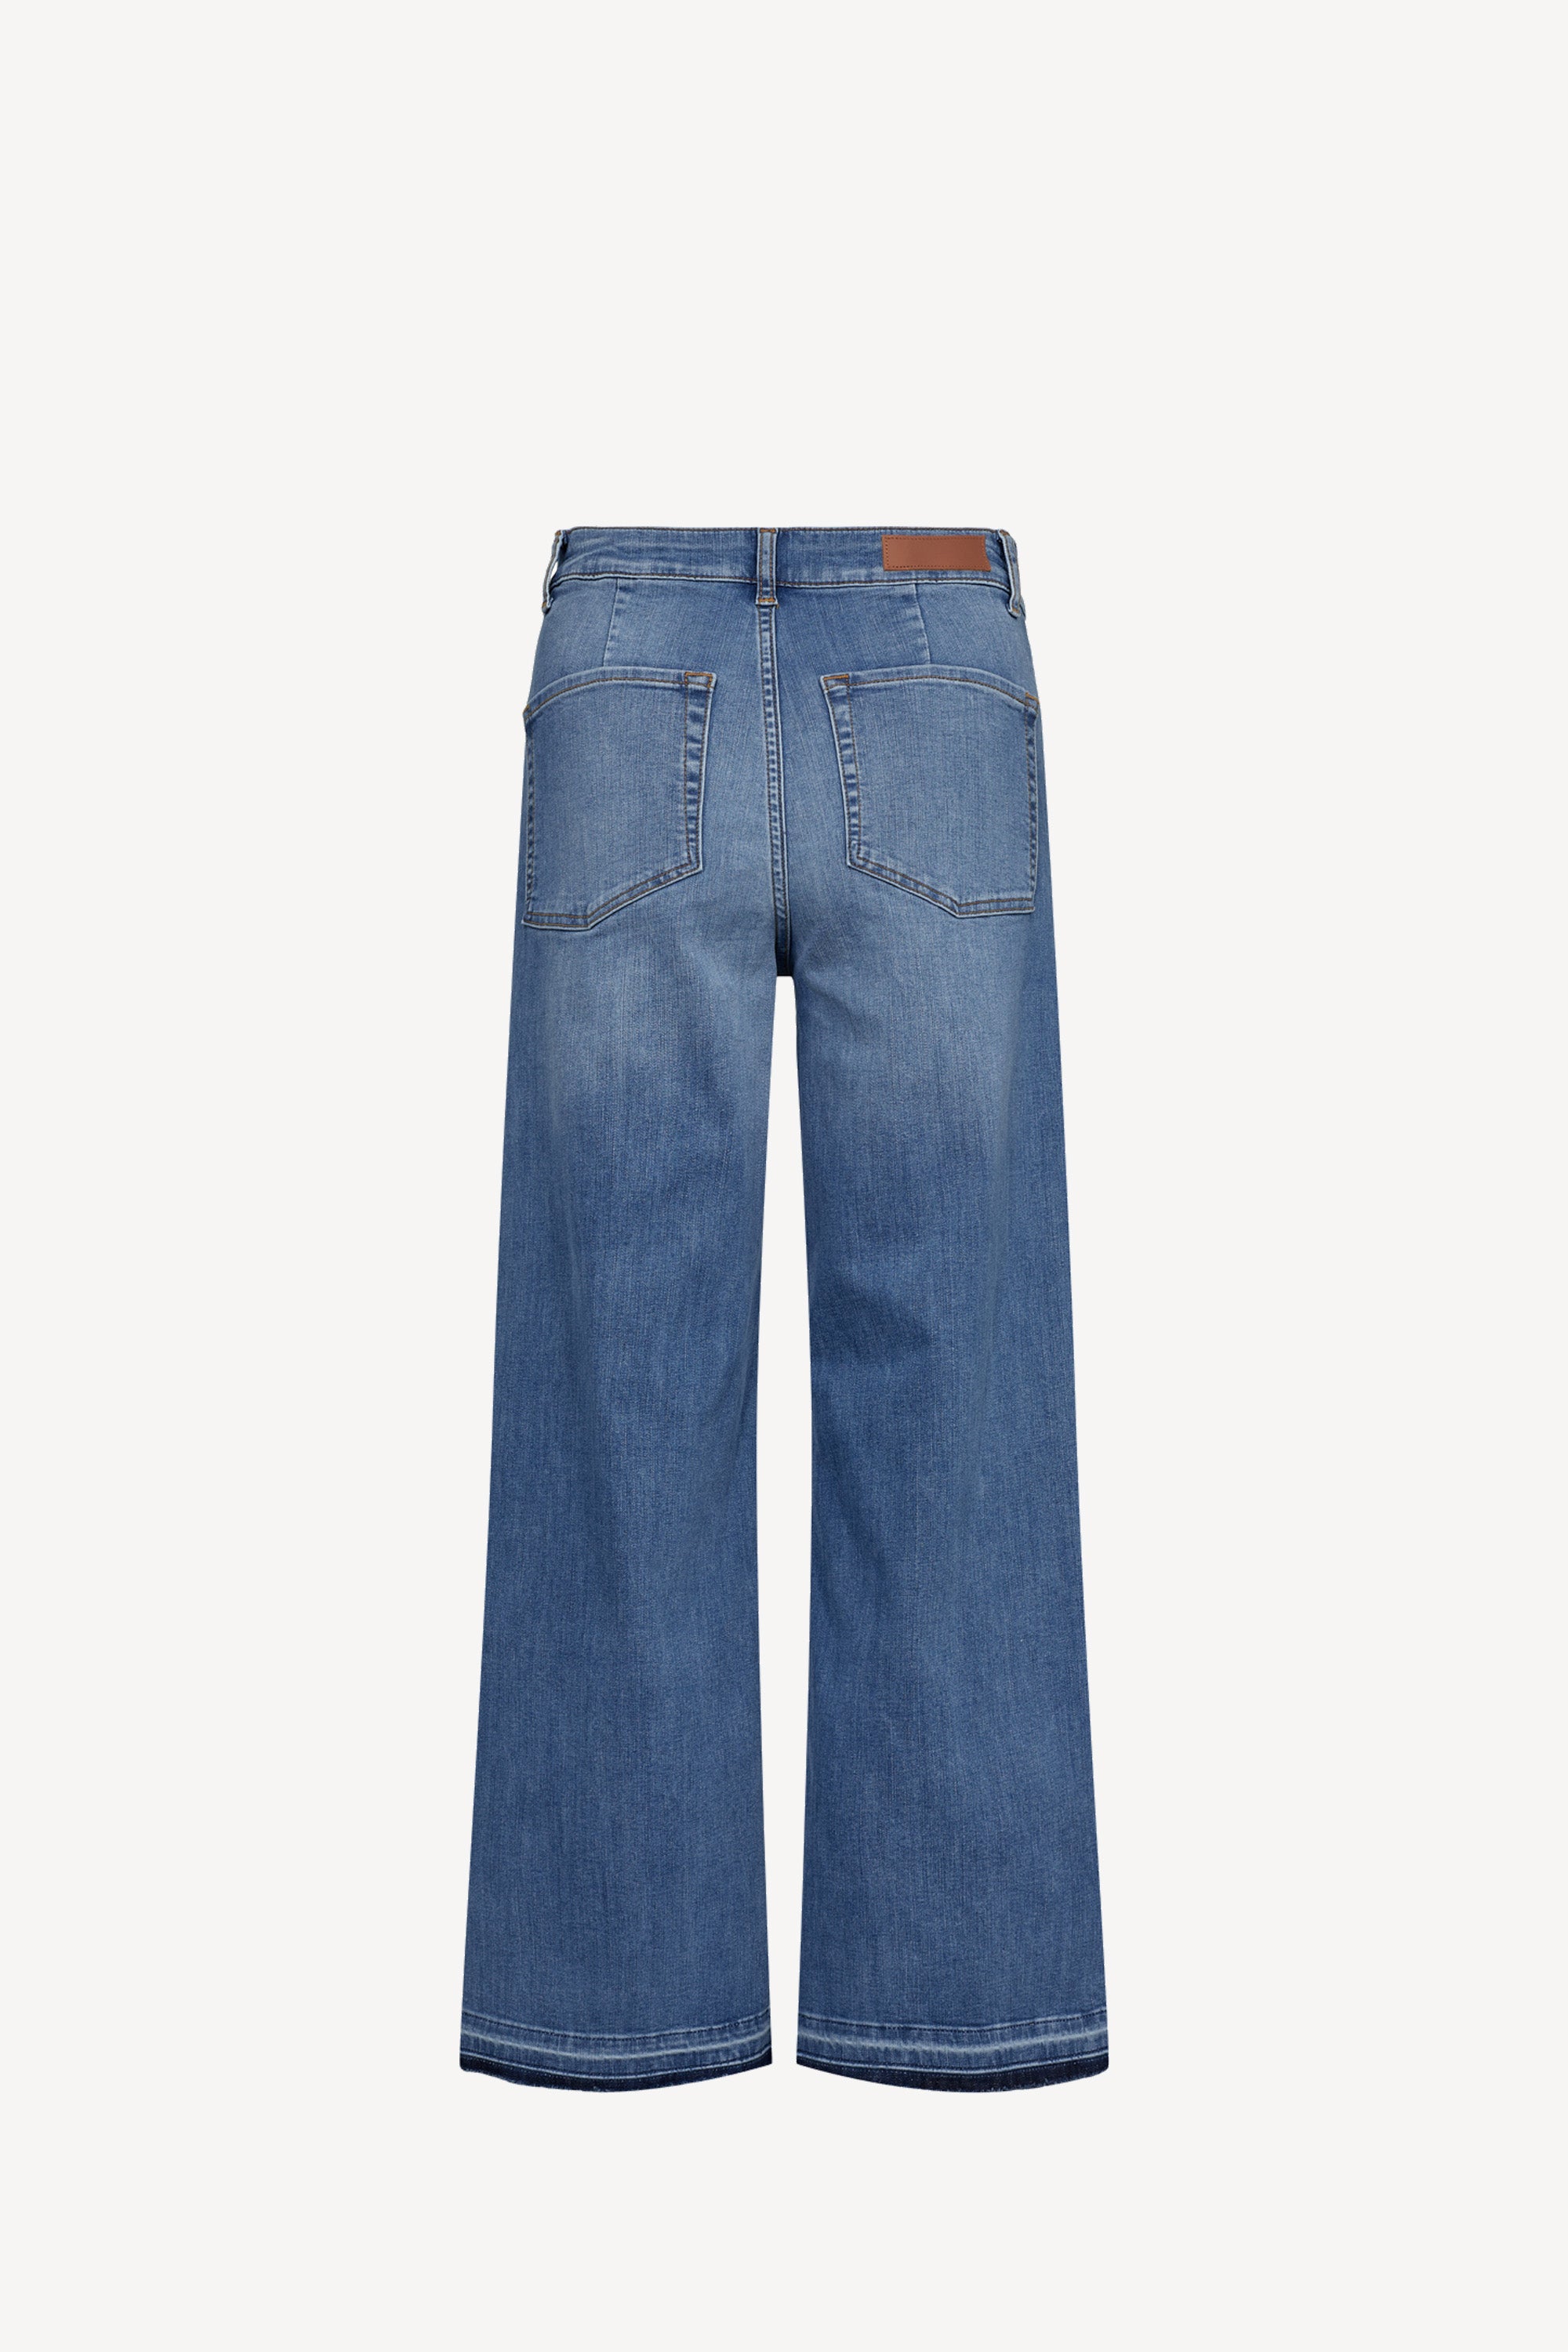 Paris Jeans Trend Crop Mid Blue